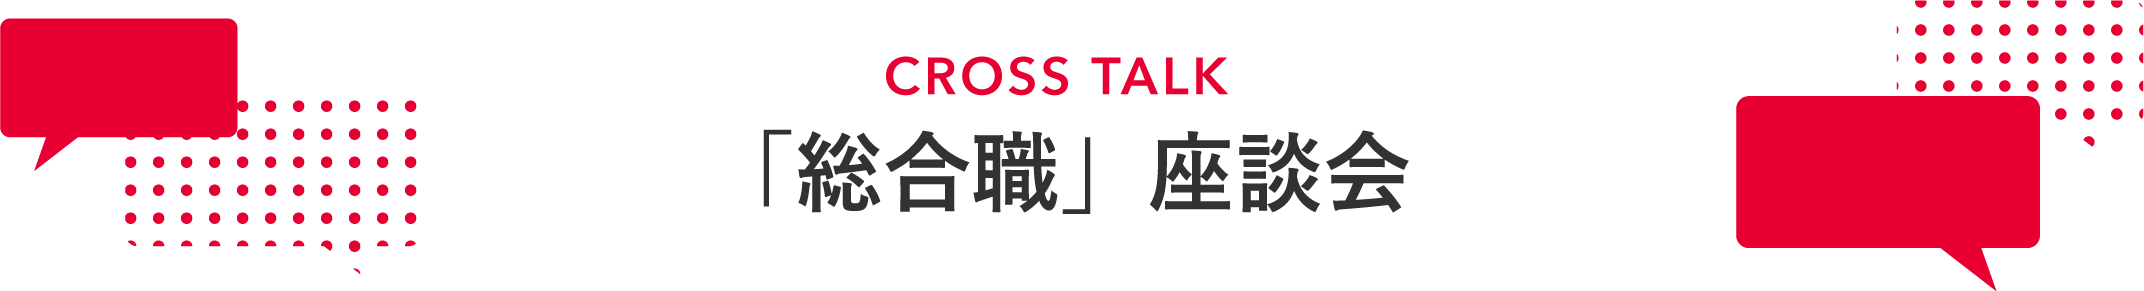 CROSS TALK 「総合職」座談会